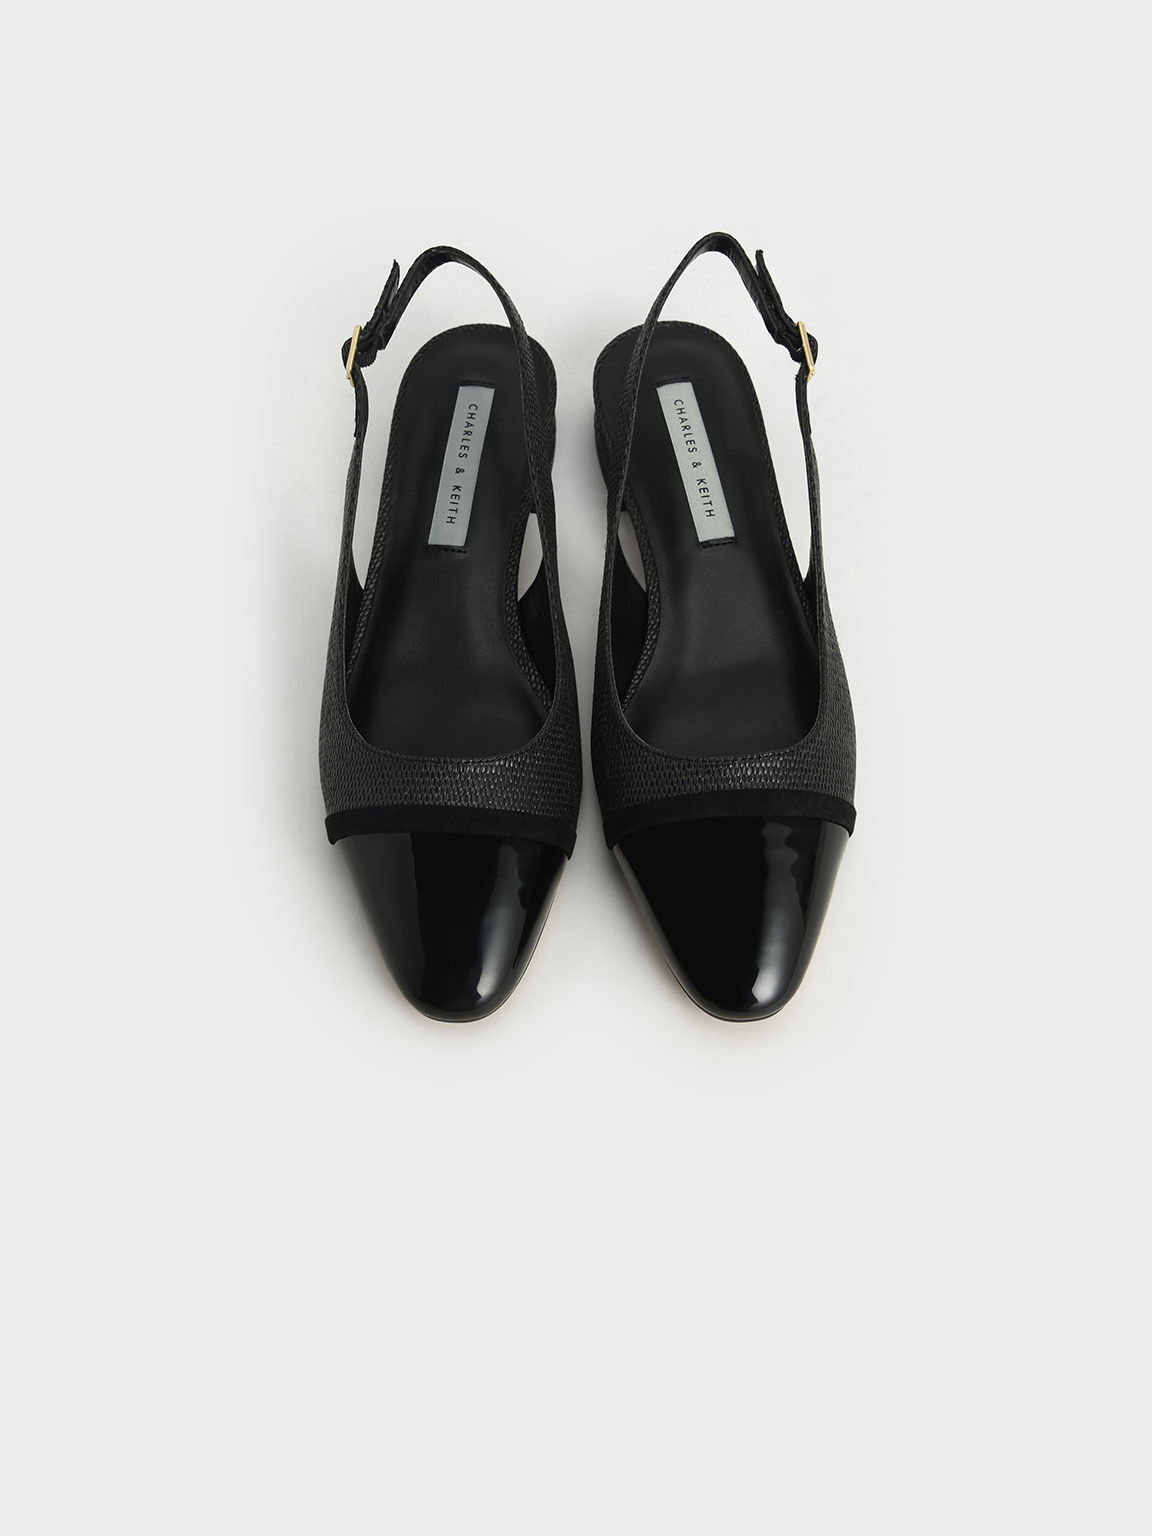 Sepatu Raffia & Patent Slingback Ballerinas, Black, hi-res